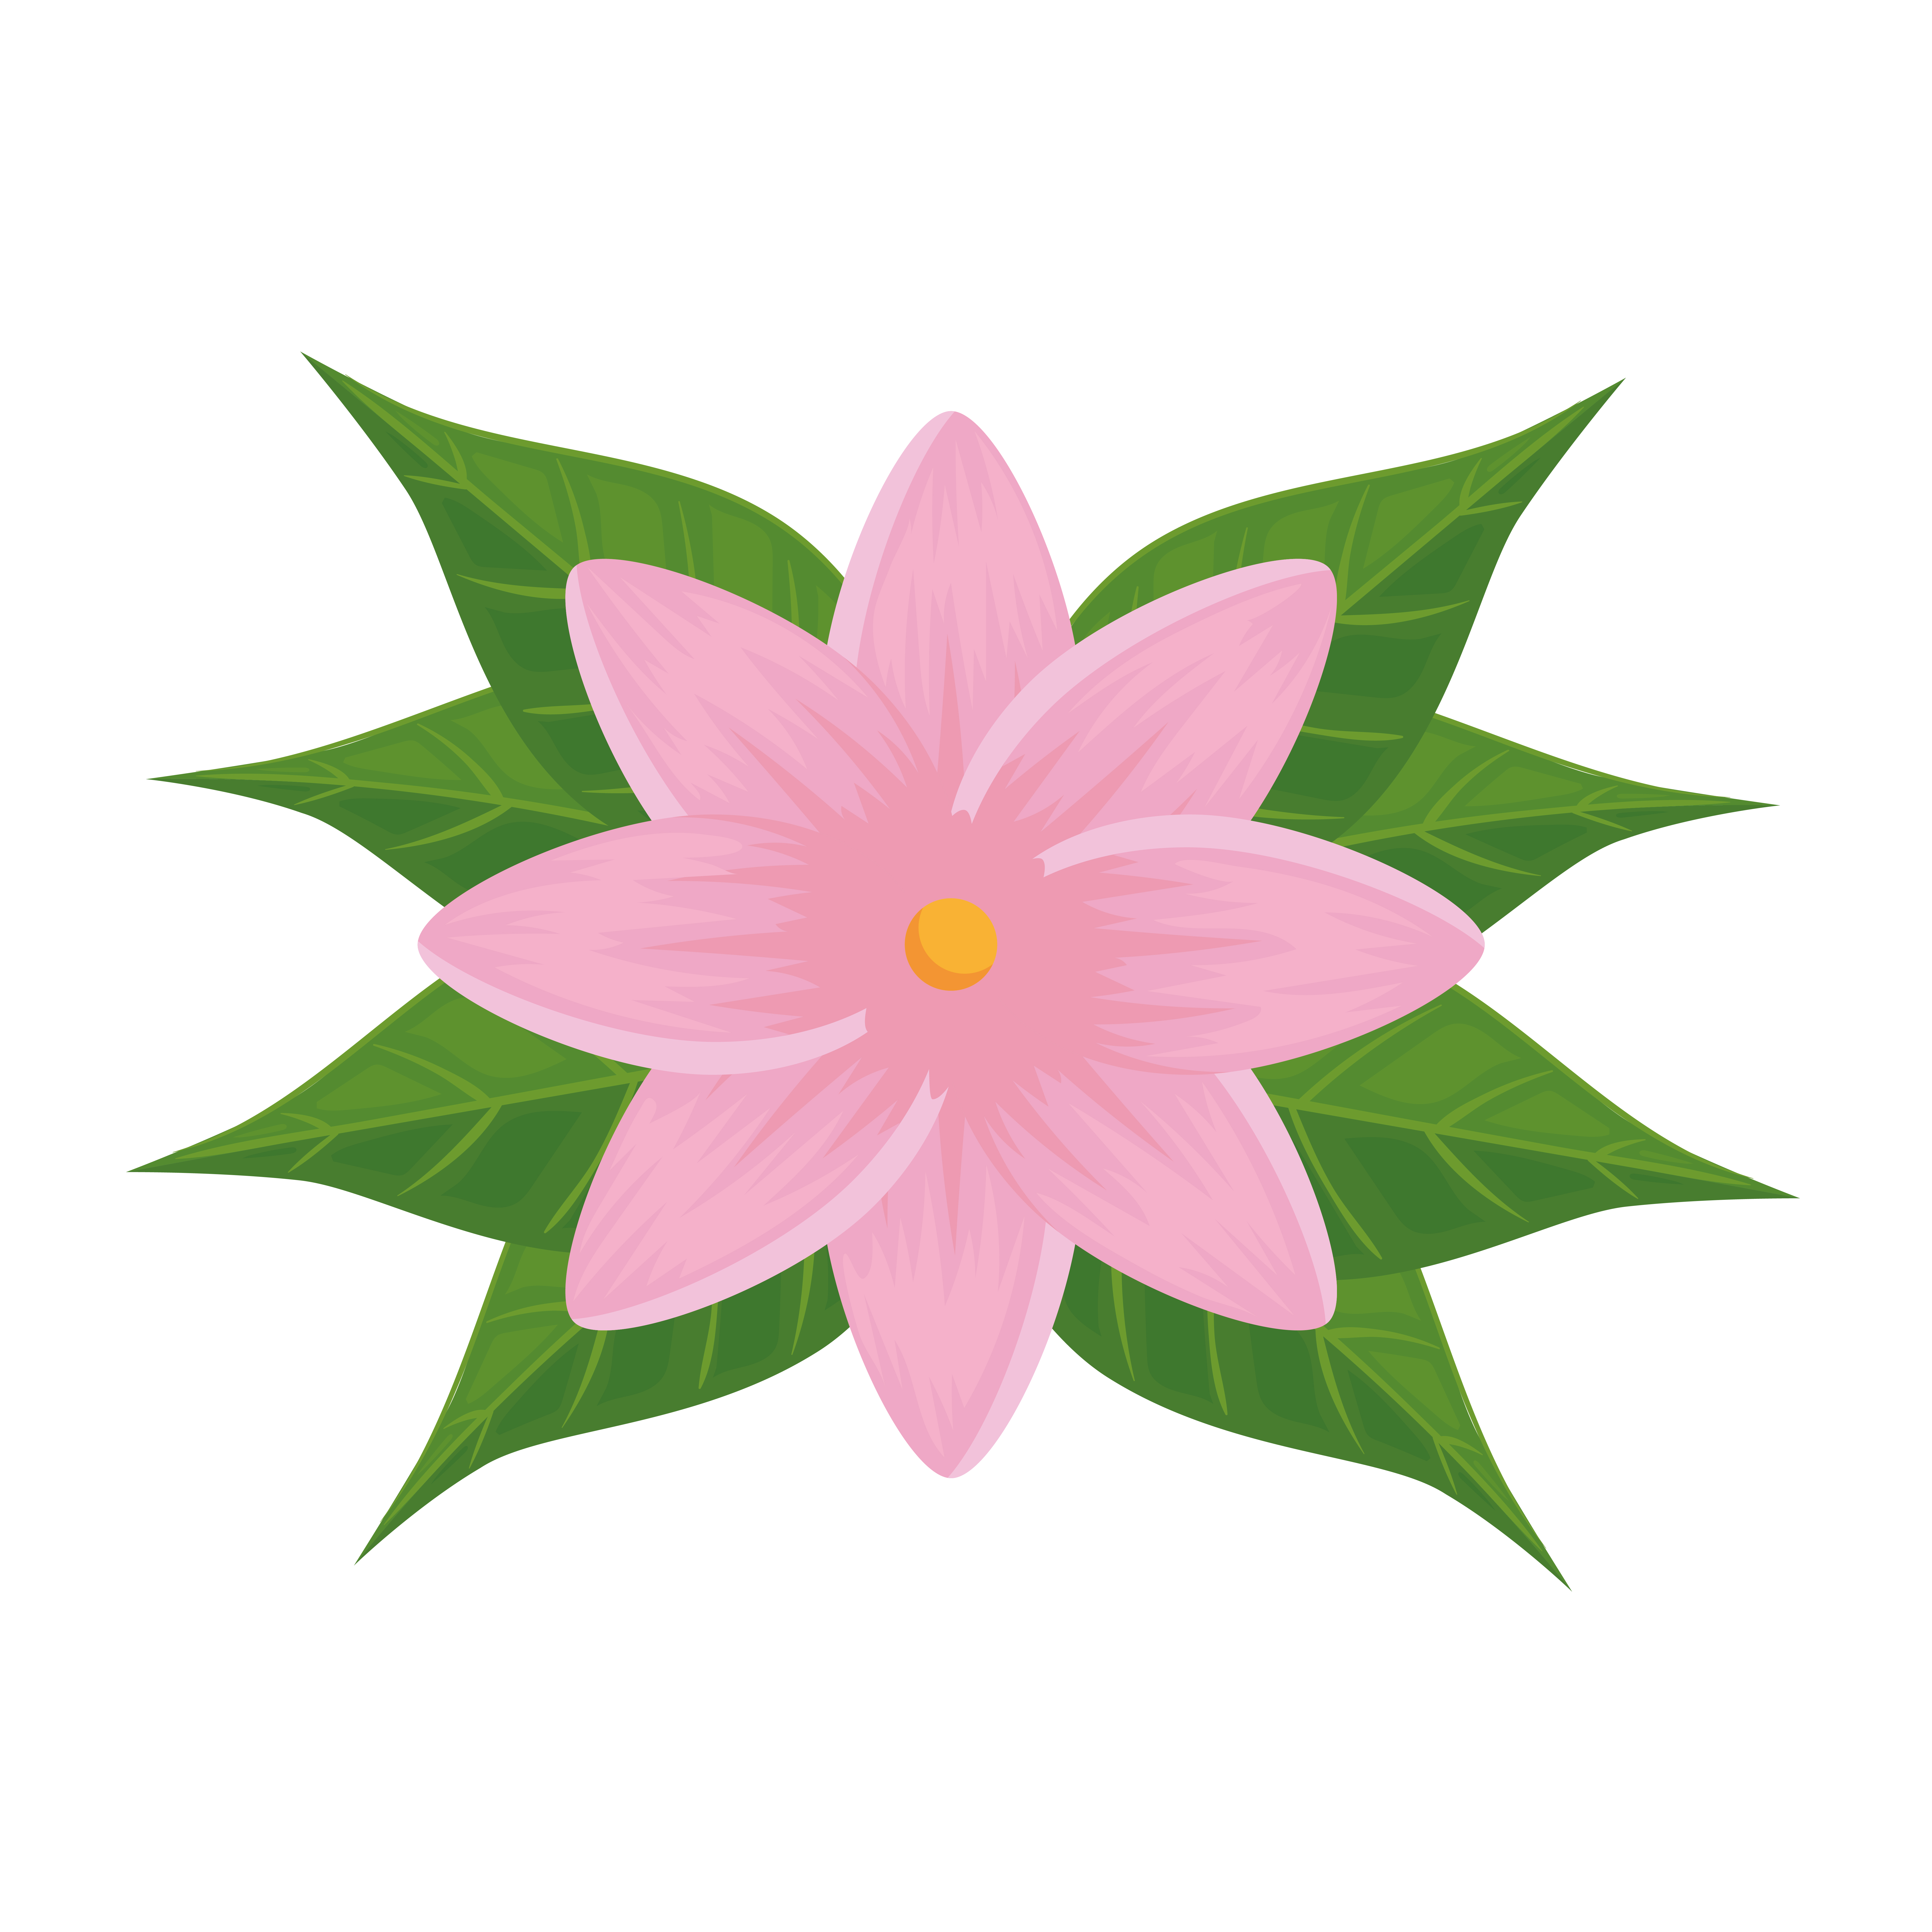 fleur tropicale rose 2696207 - Telecharger Vectoriel Gratuit, Clipart  Graphique, Vecteur Dessins et Pictogramme Gratuit